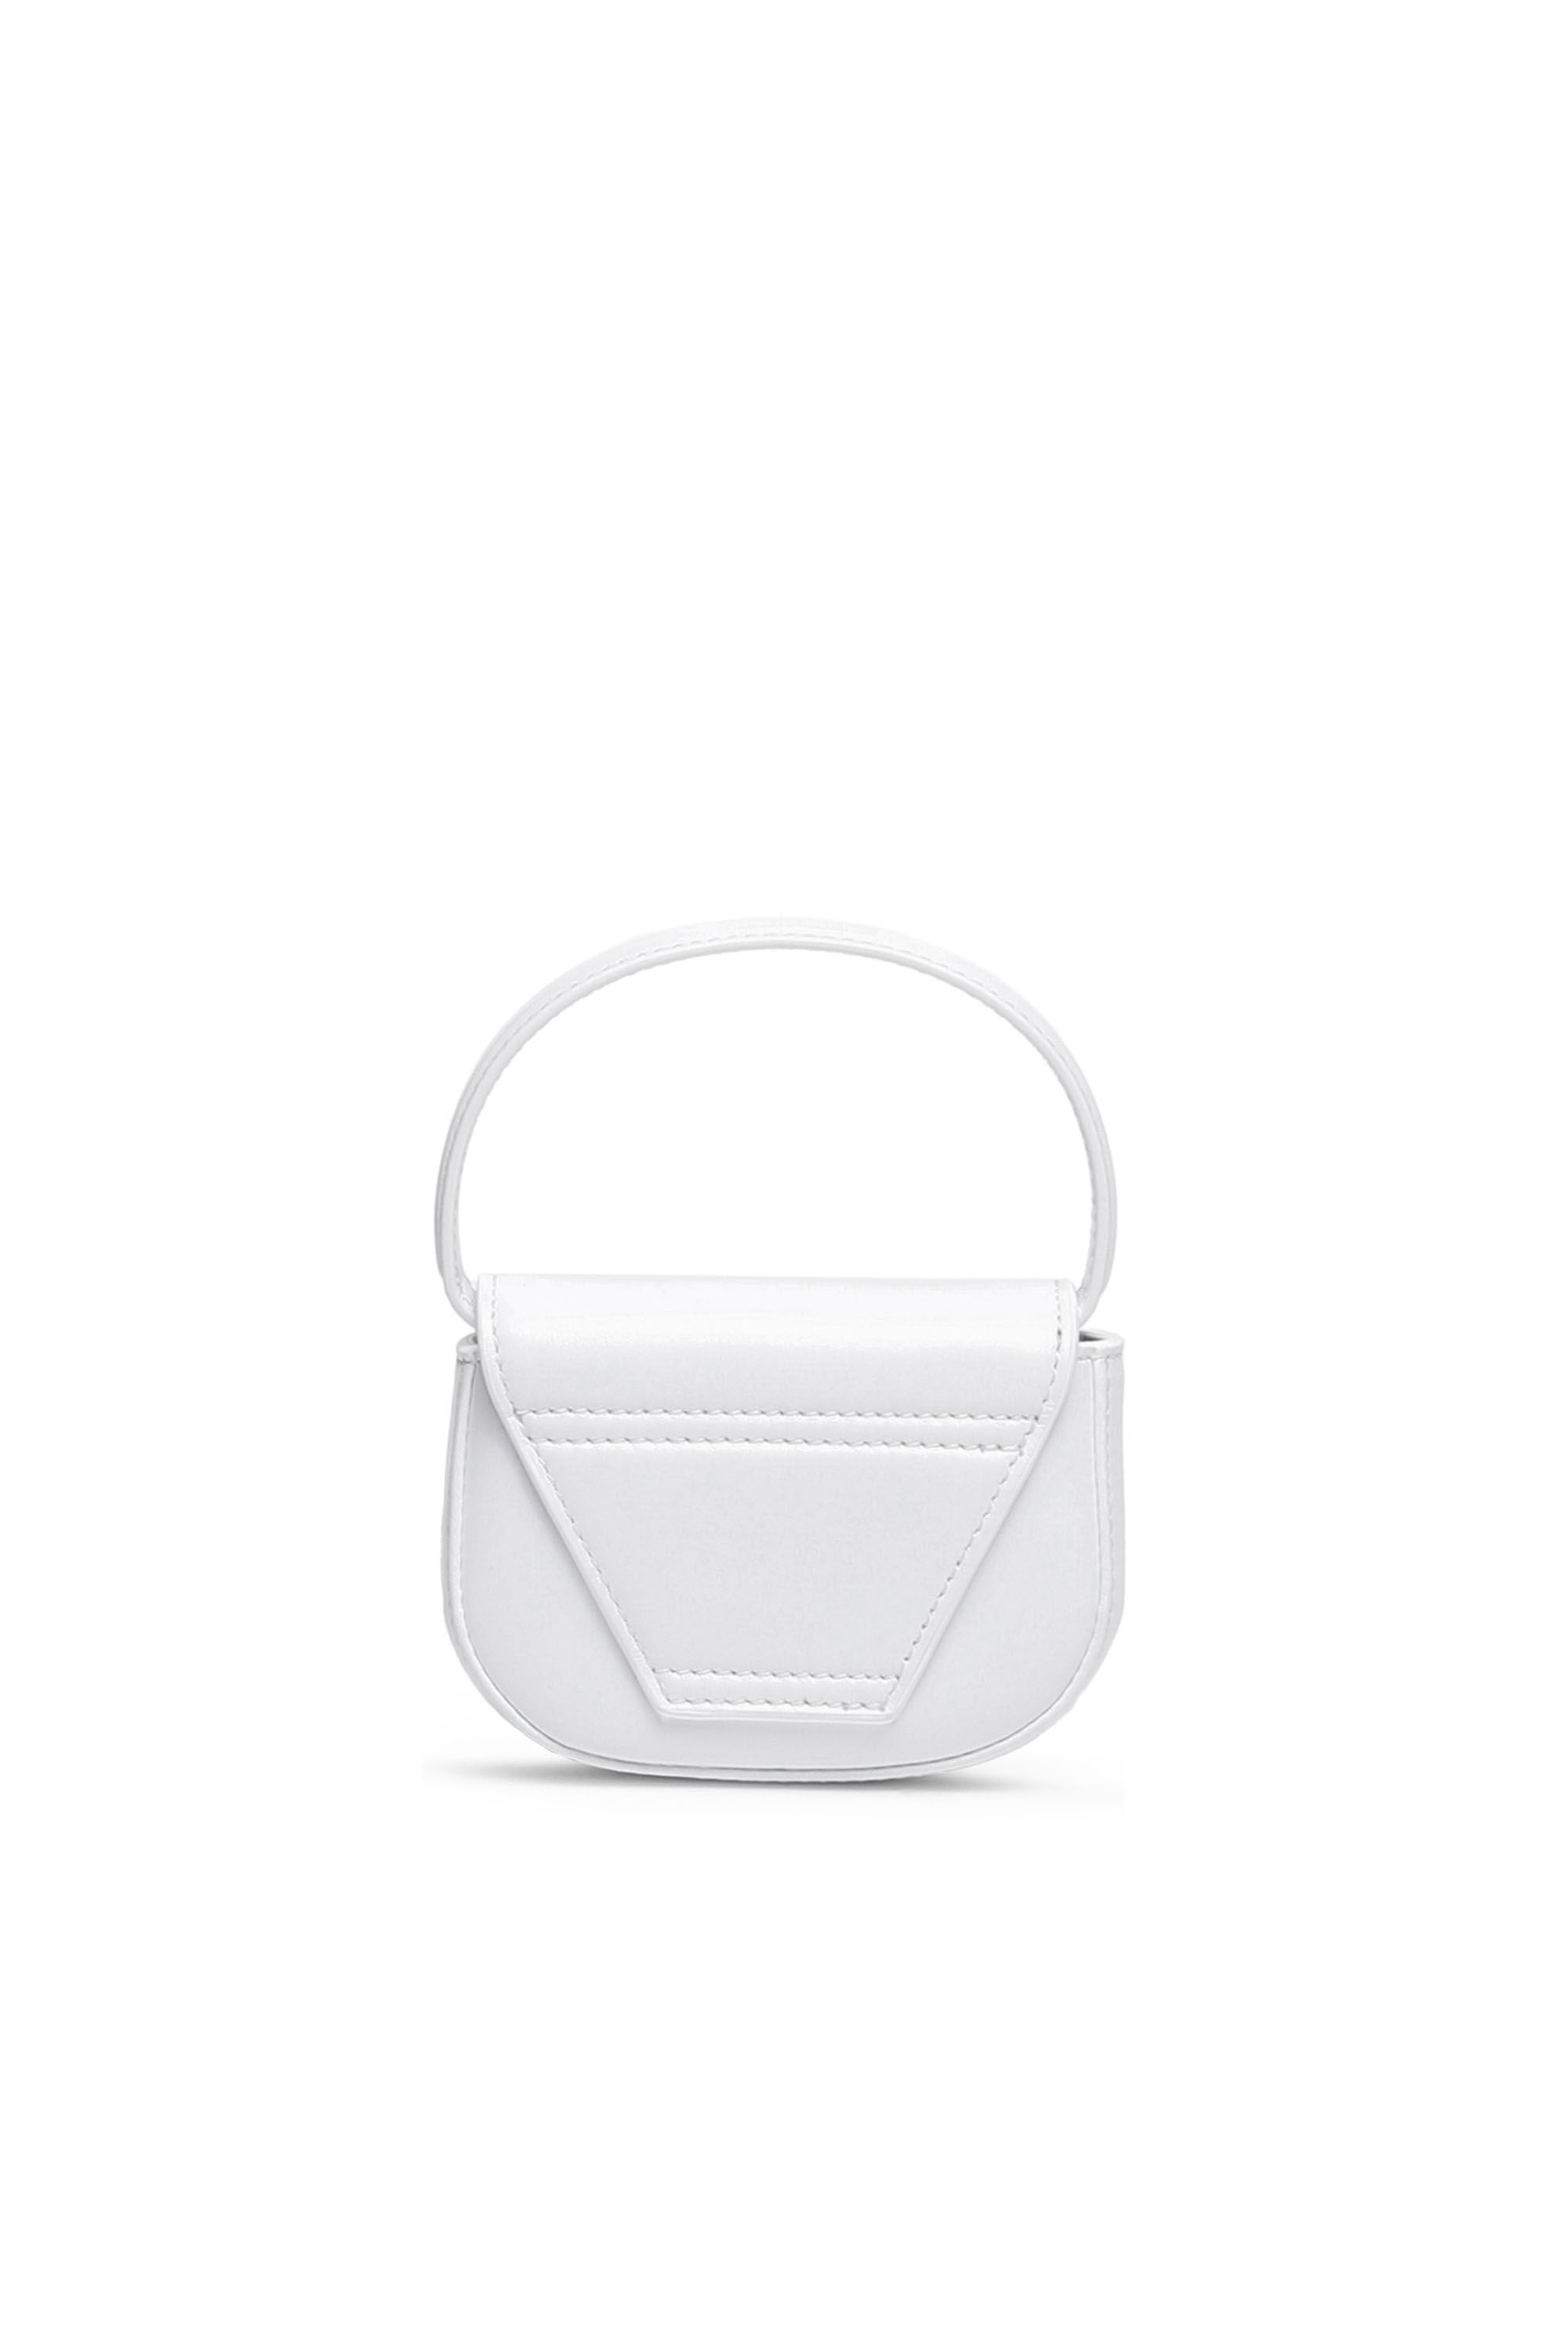 1DR XS Woman: Mini bag with D plaque | Diesel